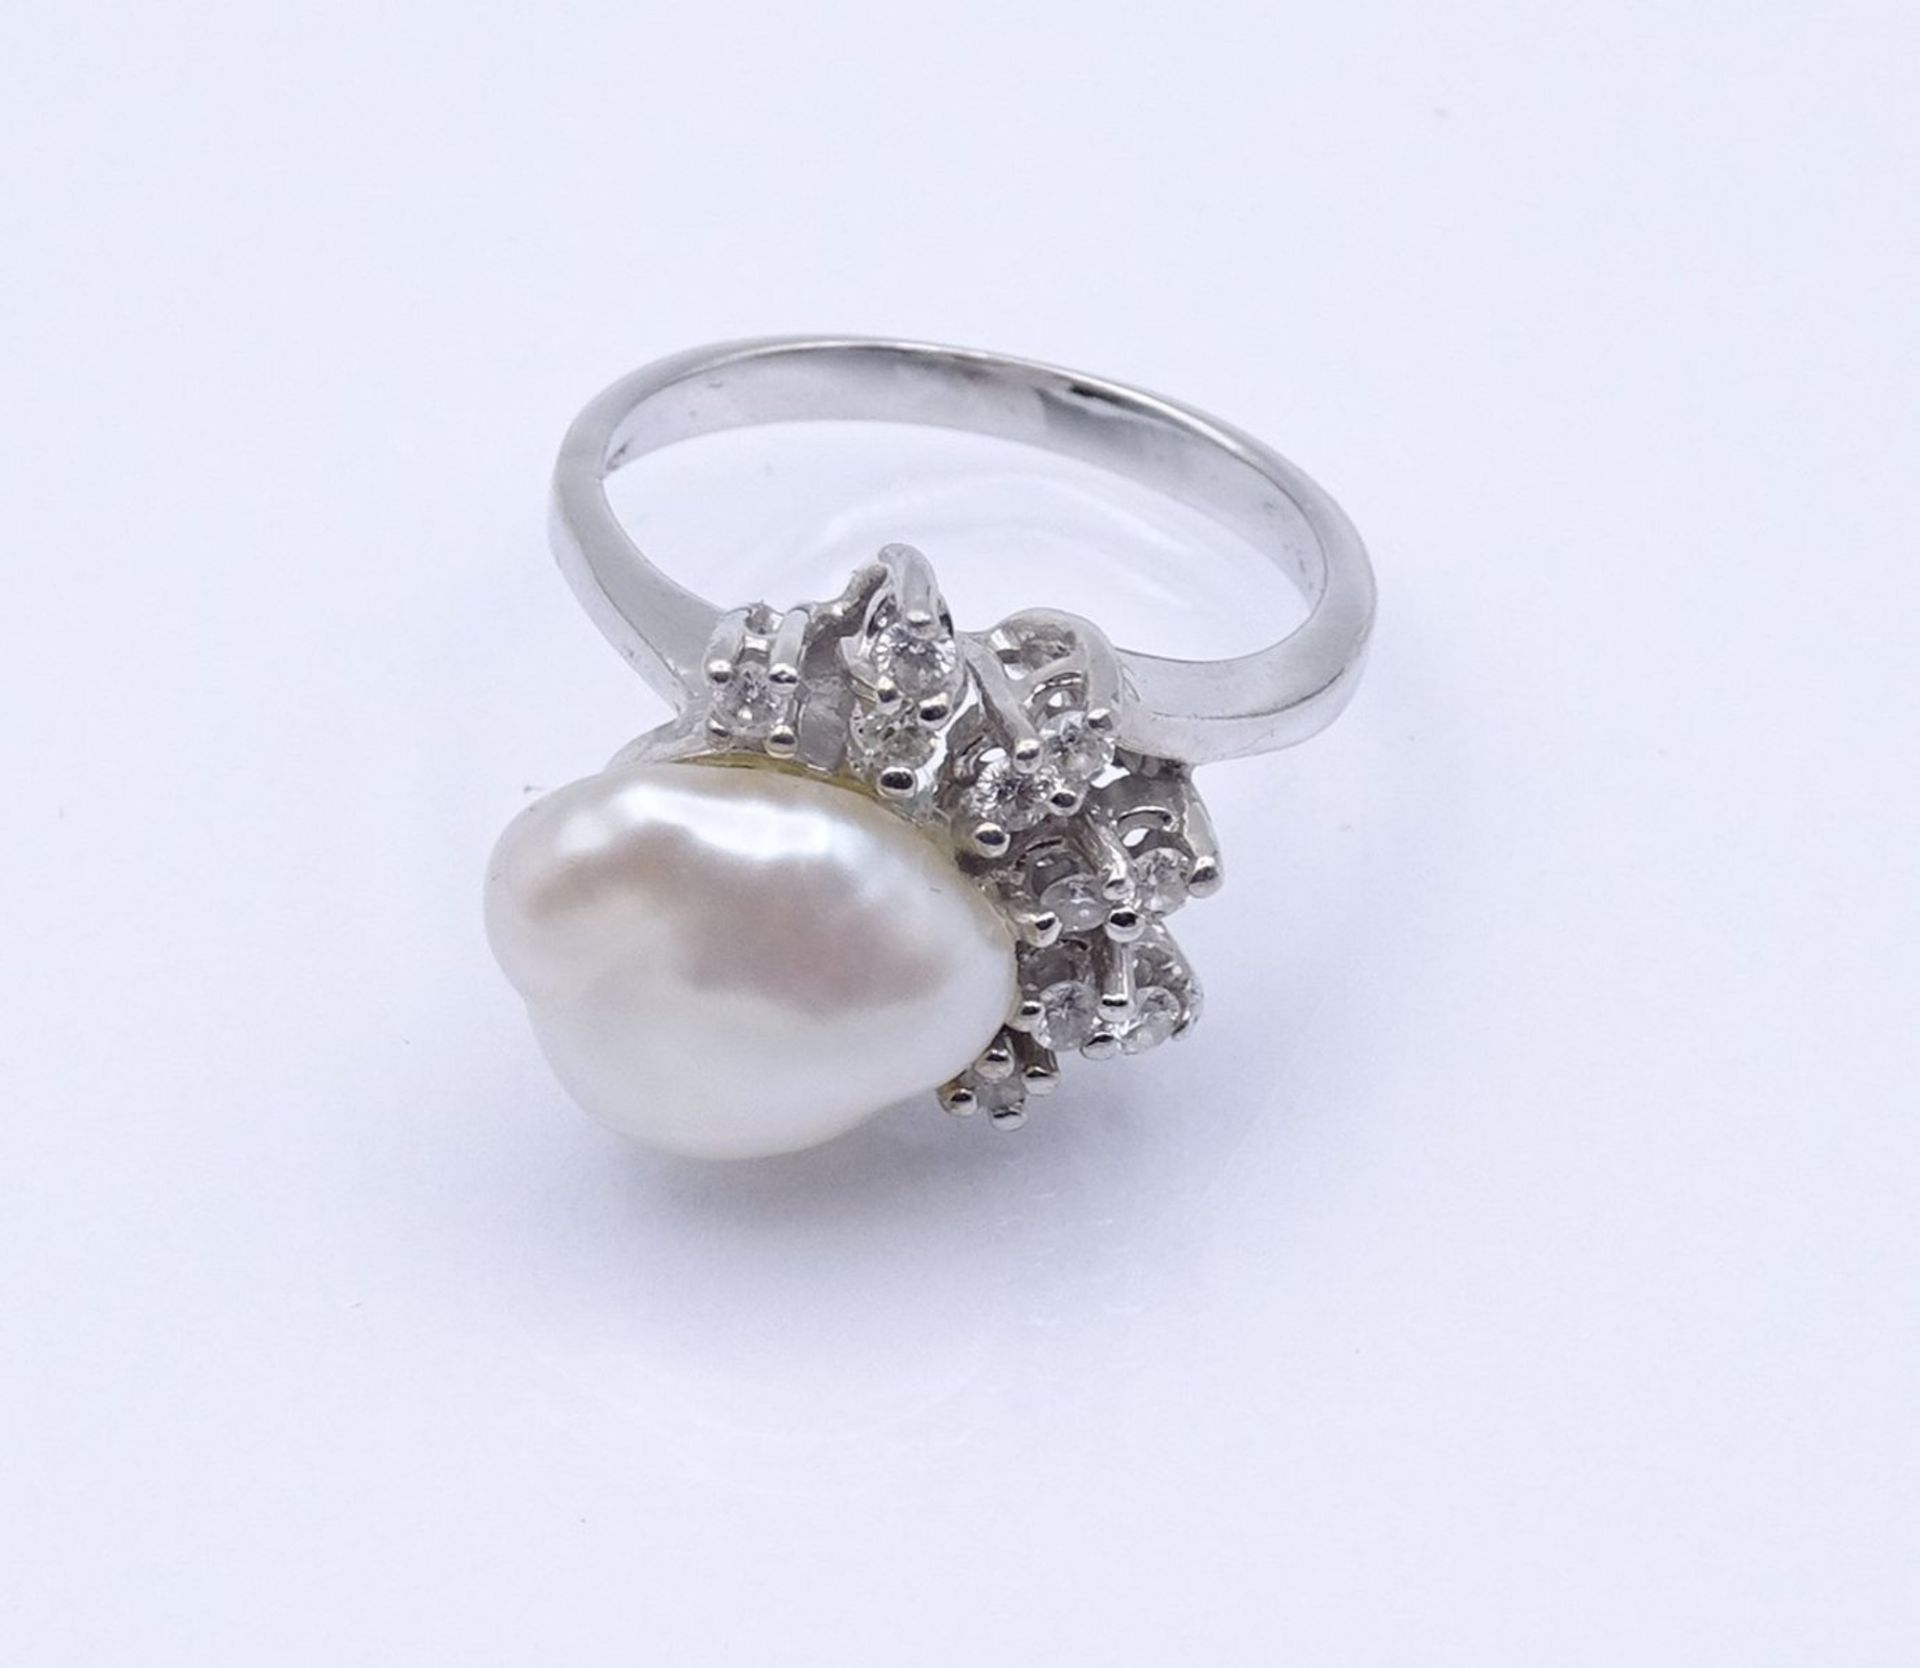 Weißgoldring 0.585 mit Perle und Brillanten, 5,6 g., RG 53 - Image 2 of 3